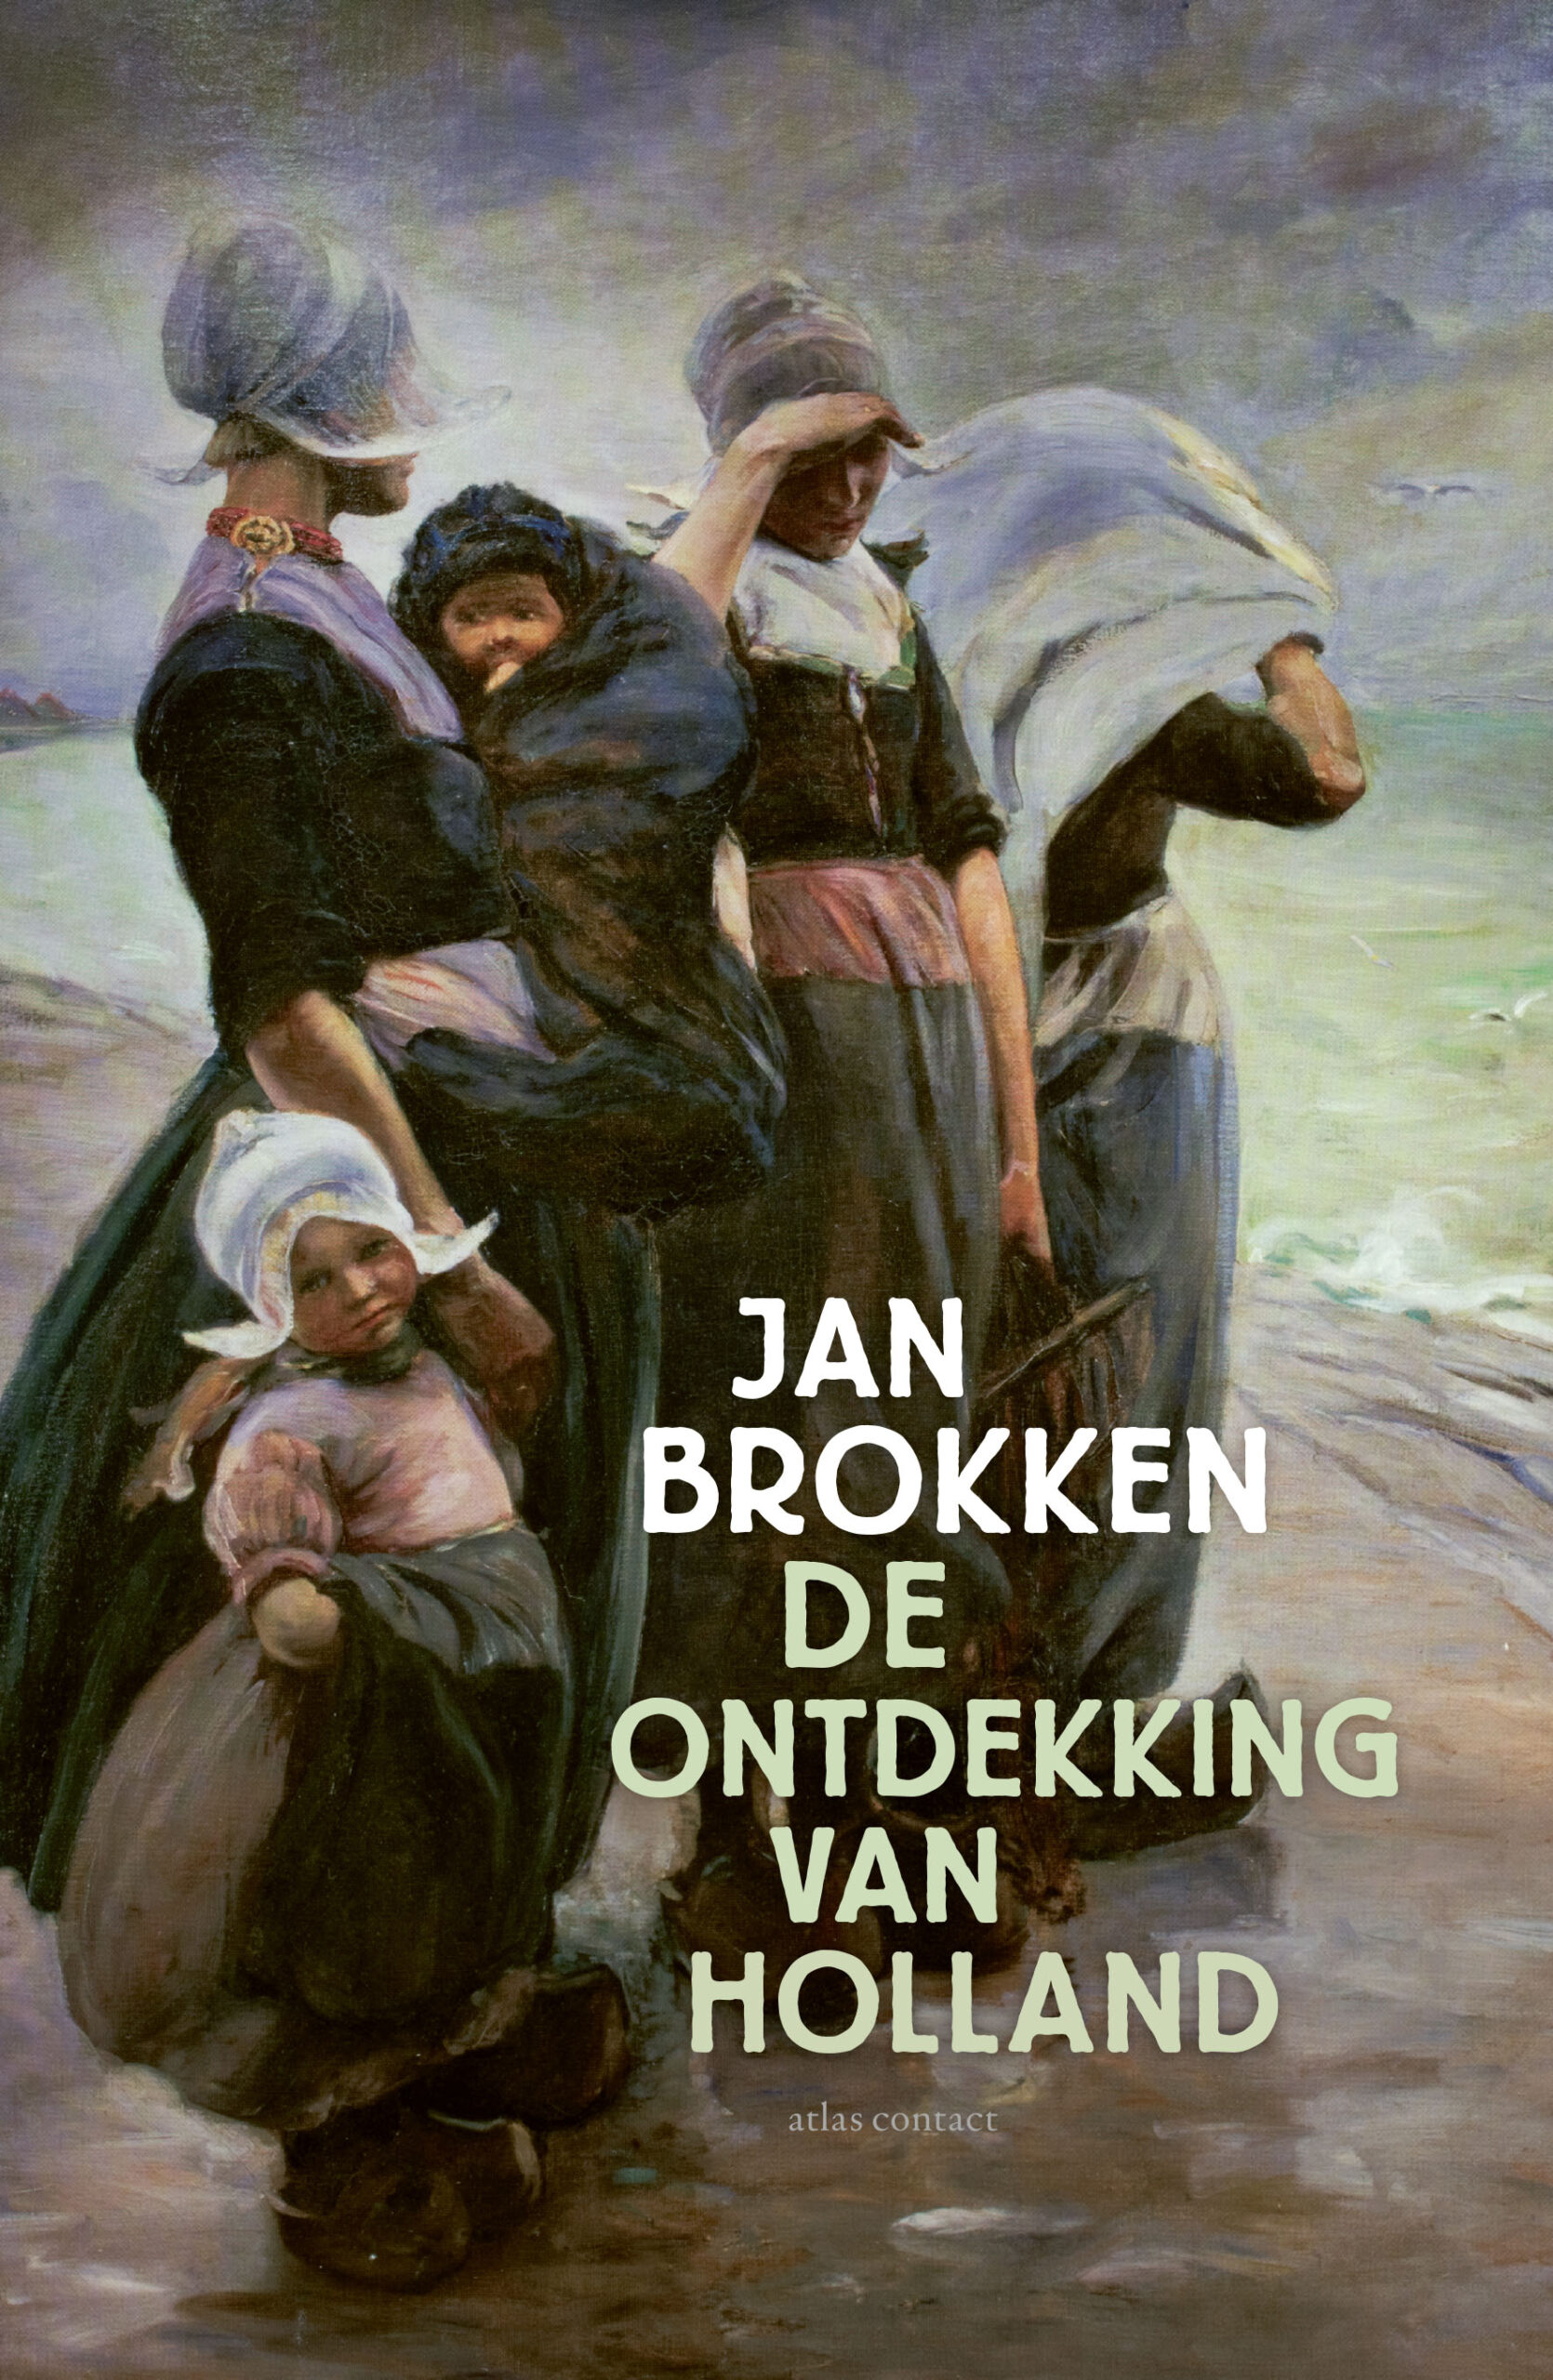  Jan Brokken over ‘De ontdekking van Holland’ in Rhoon 